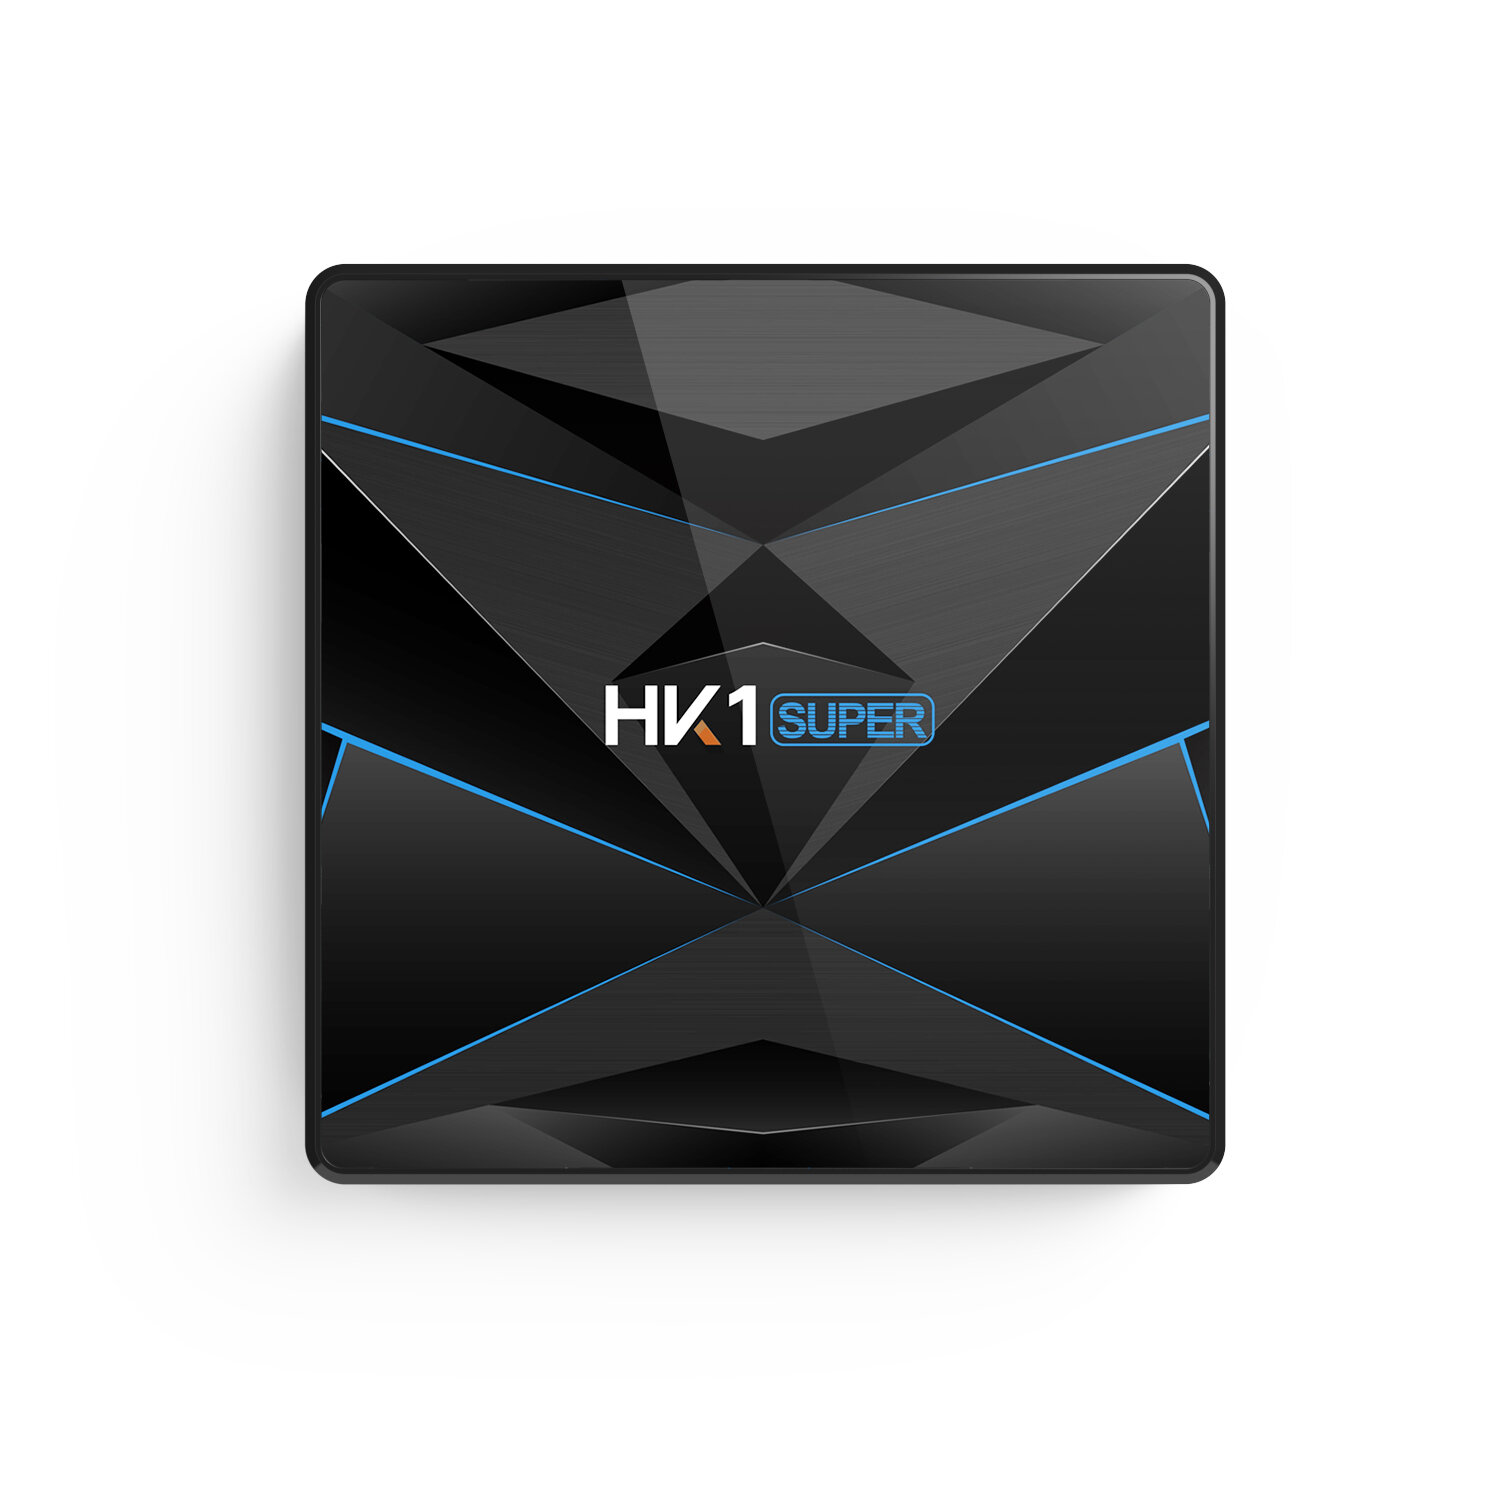 

HK1 Super RK3318 4 ГБ RAM 32GB ПЗУ 5G WIFI Bluetooth 4.0 Android 9.0 4K ТВ Коробка